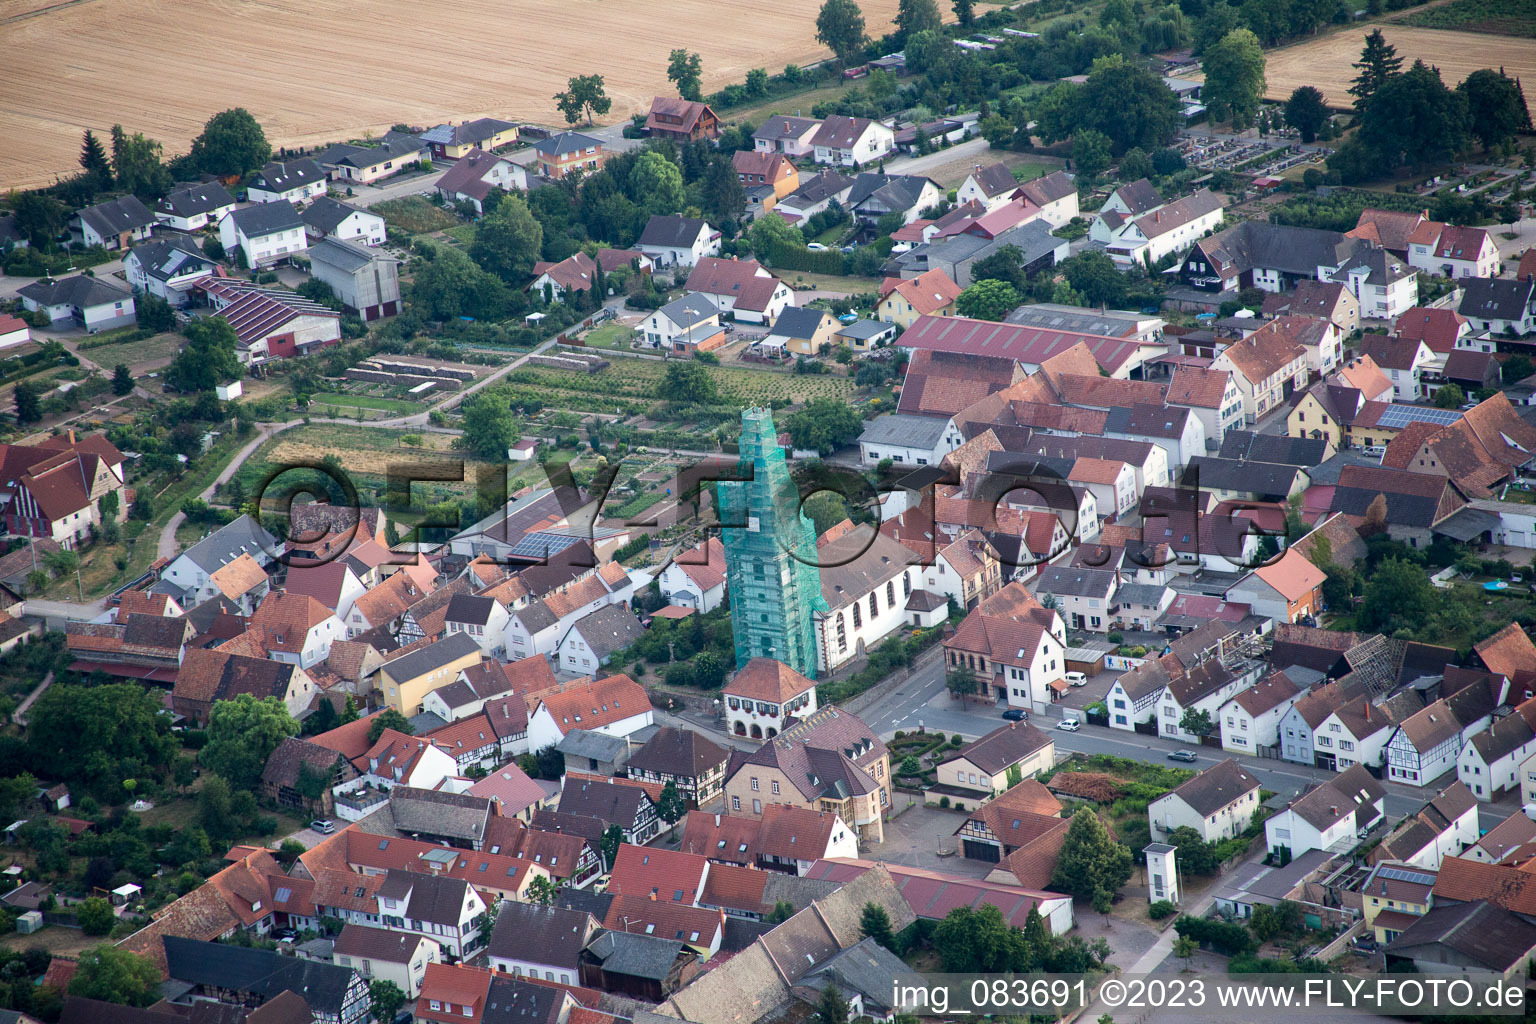 Photographie aérienne de Ottersheim, église catholique échafaudée par Leidner GmbH Gerüstbau, Landau à Ottersheim bei Landau dans le département Rhénanie-Palatinat, Allemagne